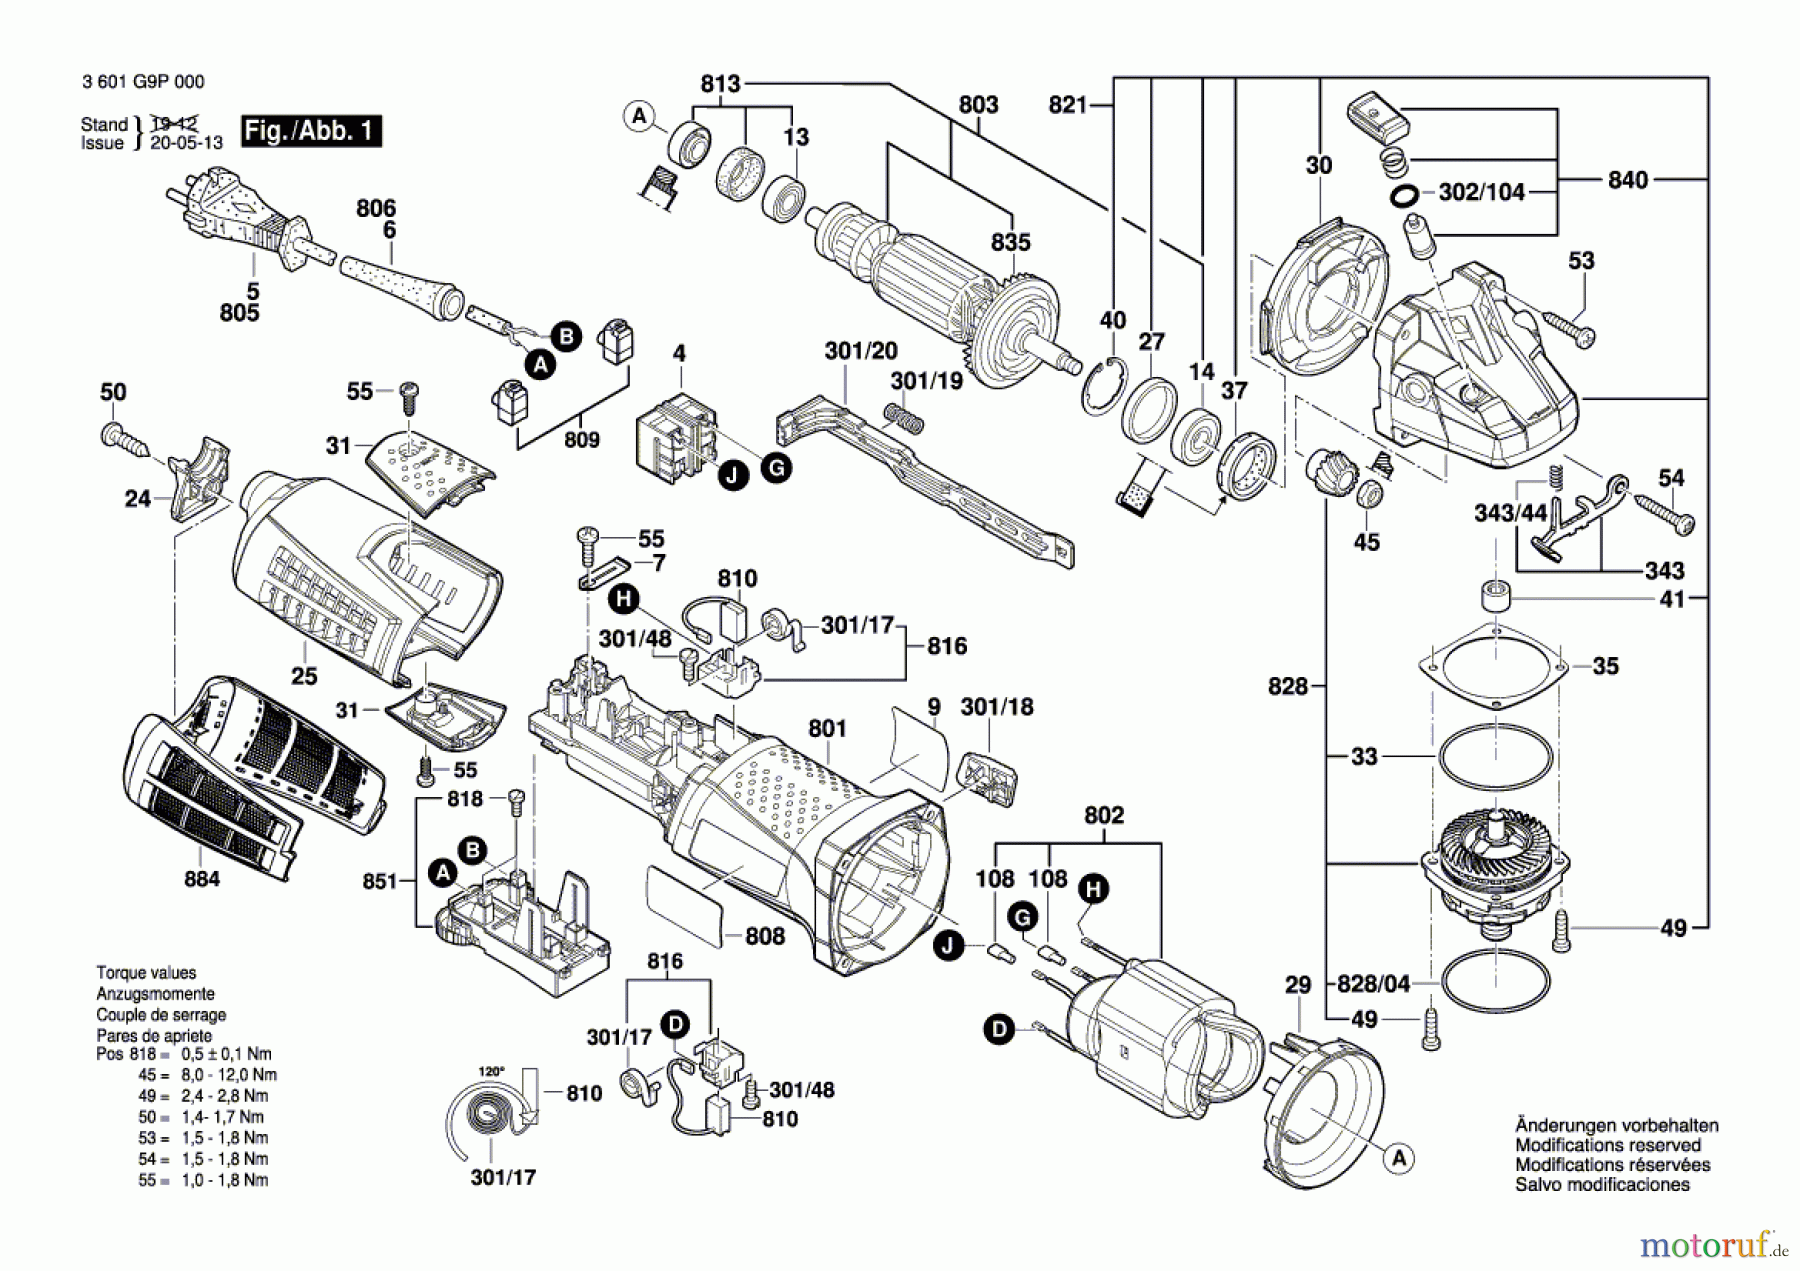  Bosch Werkzeug Winkelschleifer GWS 19-125CIE Seite 1